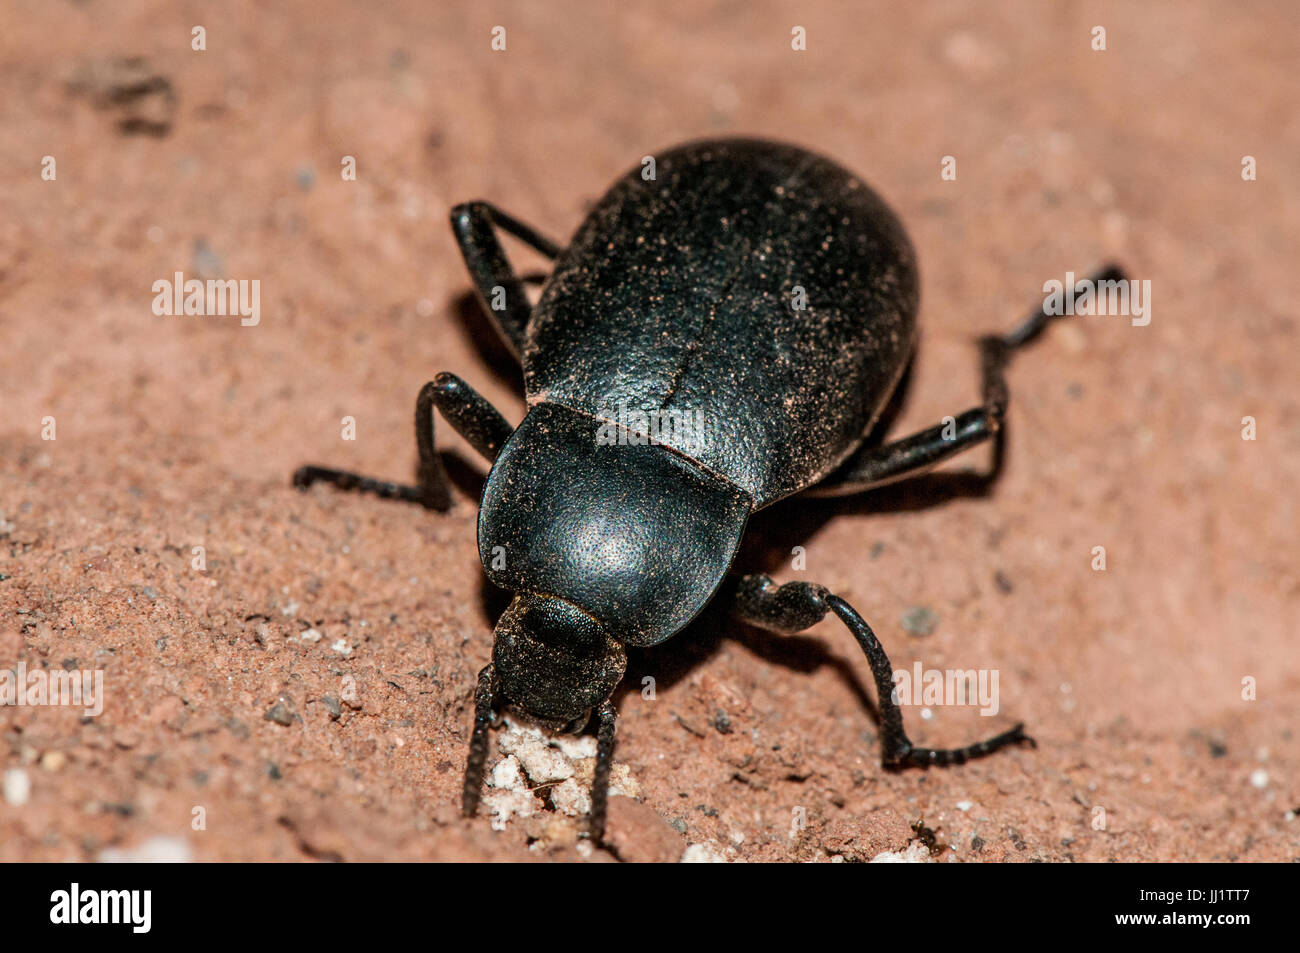 Escarabajo (blaps mucronata) comiendo en un suelo arcilloso Foto de stock